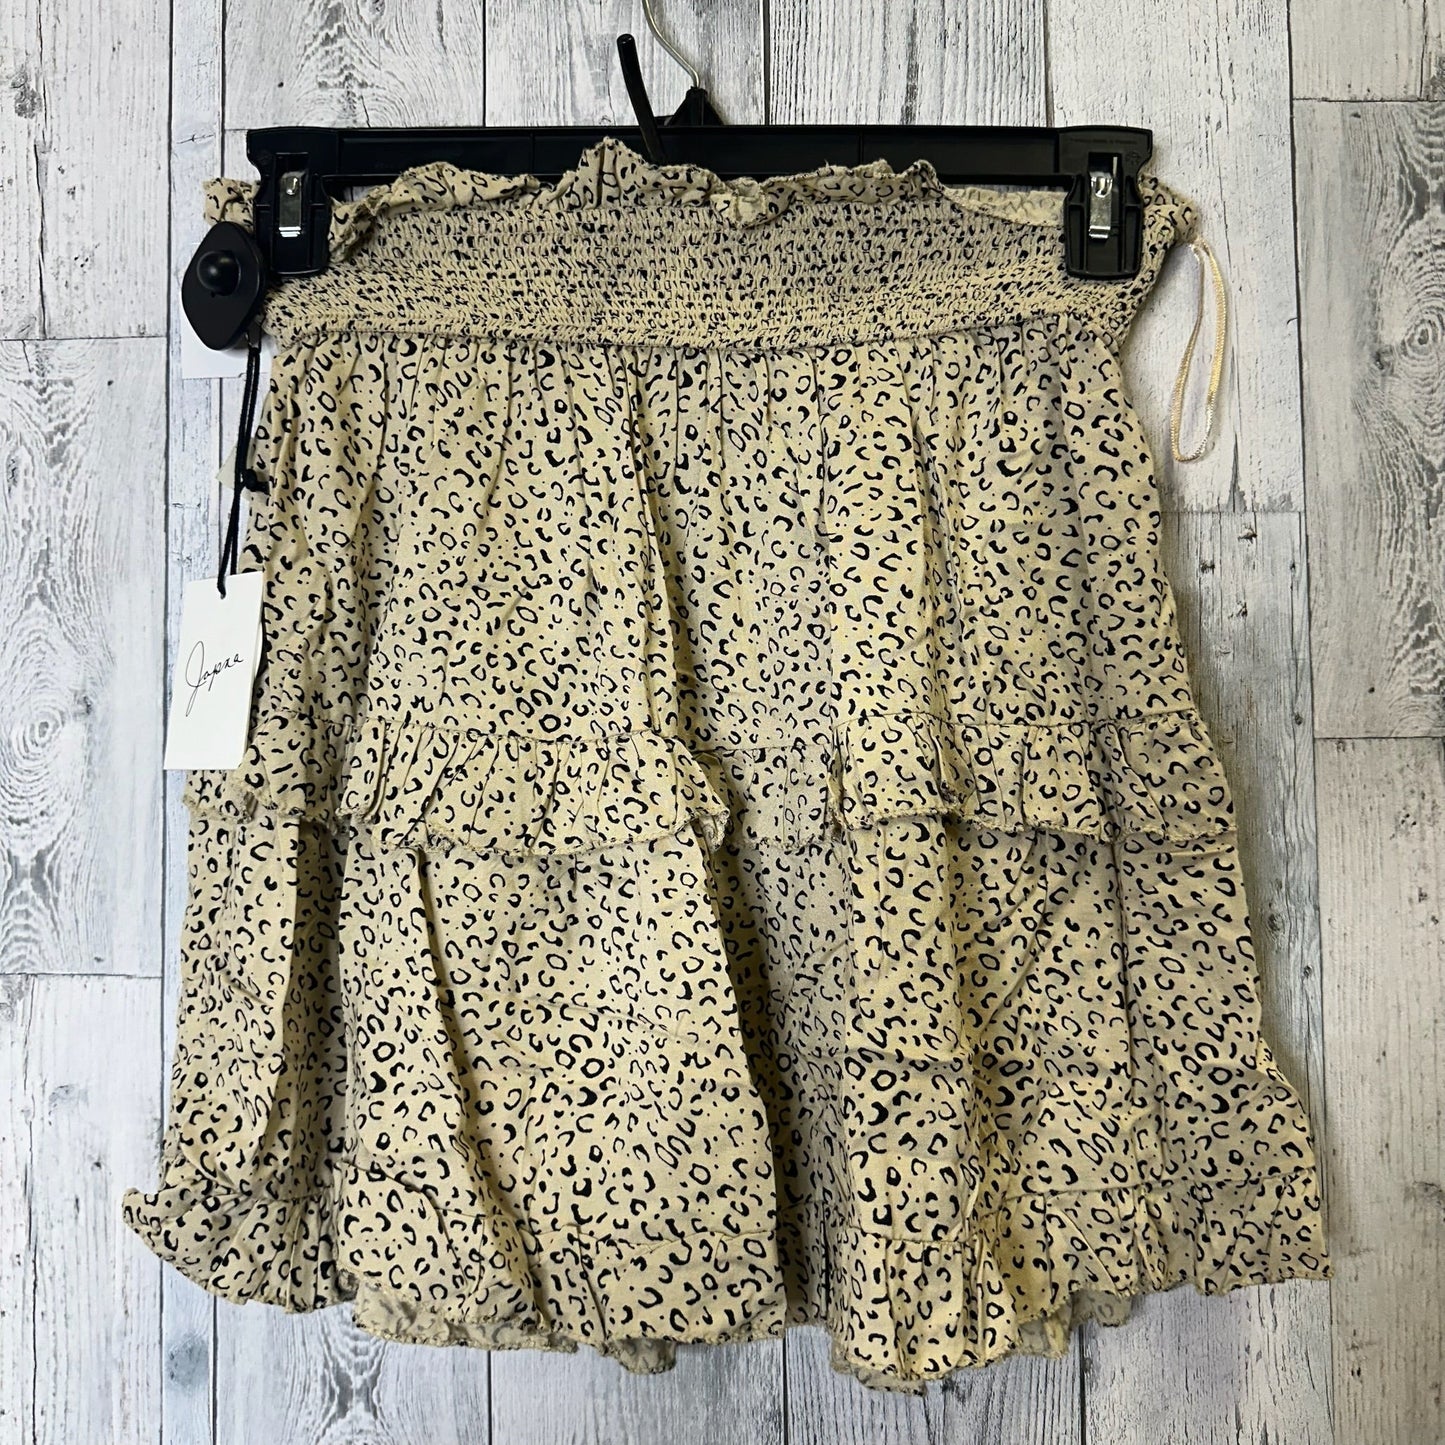 Skirt Mini & Short By Japna  Size: M